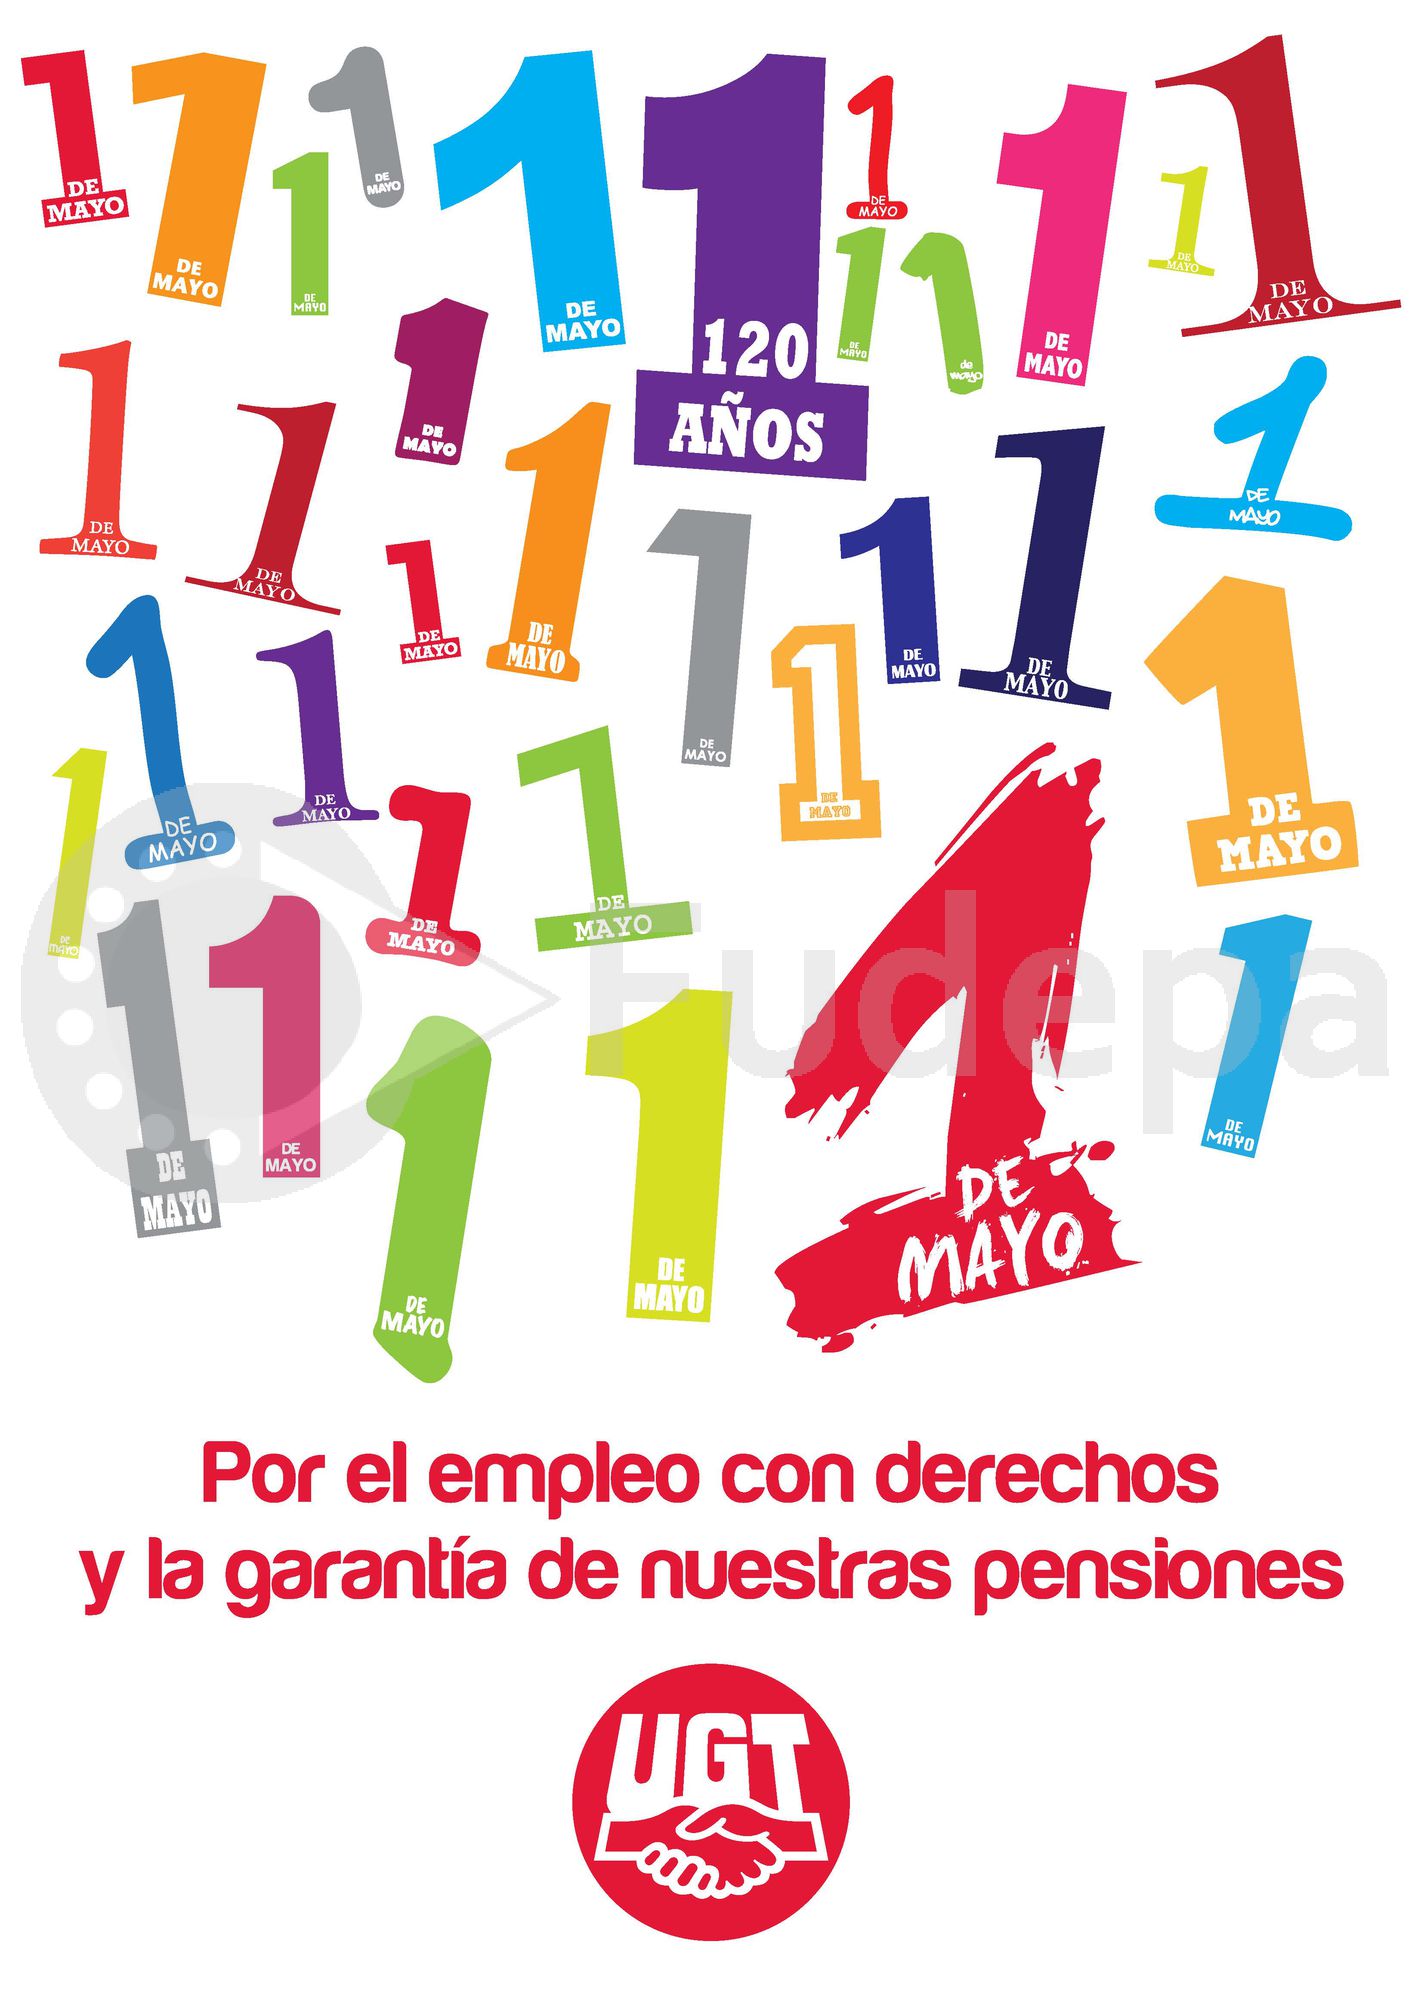 2010: Por el empleo con derechos y la garantía de nuestras pensiones